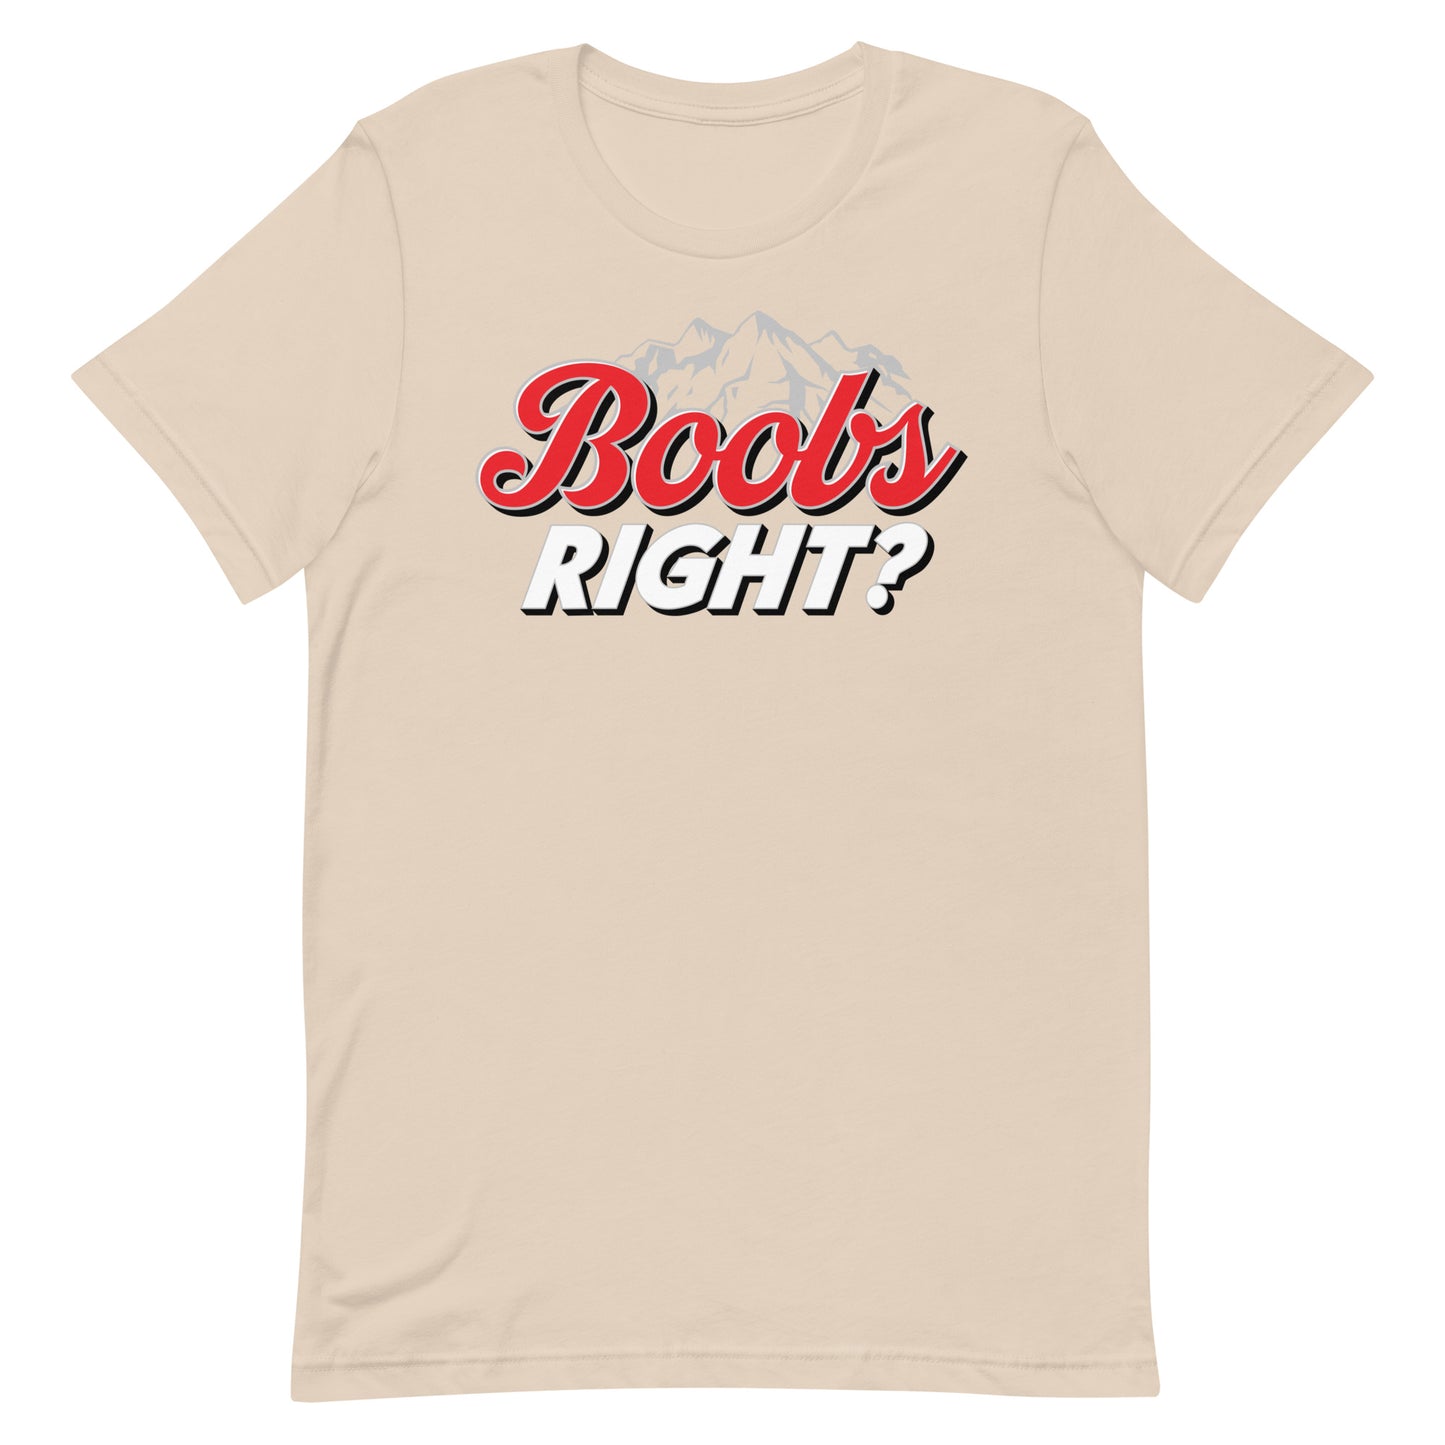 Boobs Right? (Coors Light) Unisex t-shirt